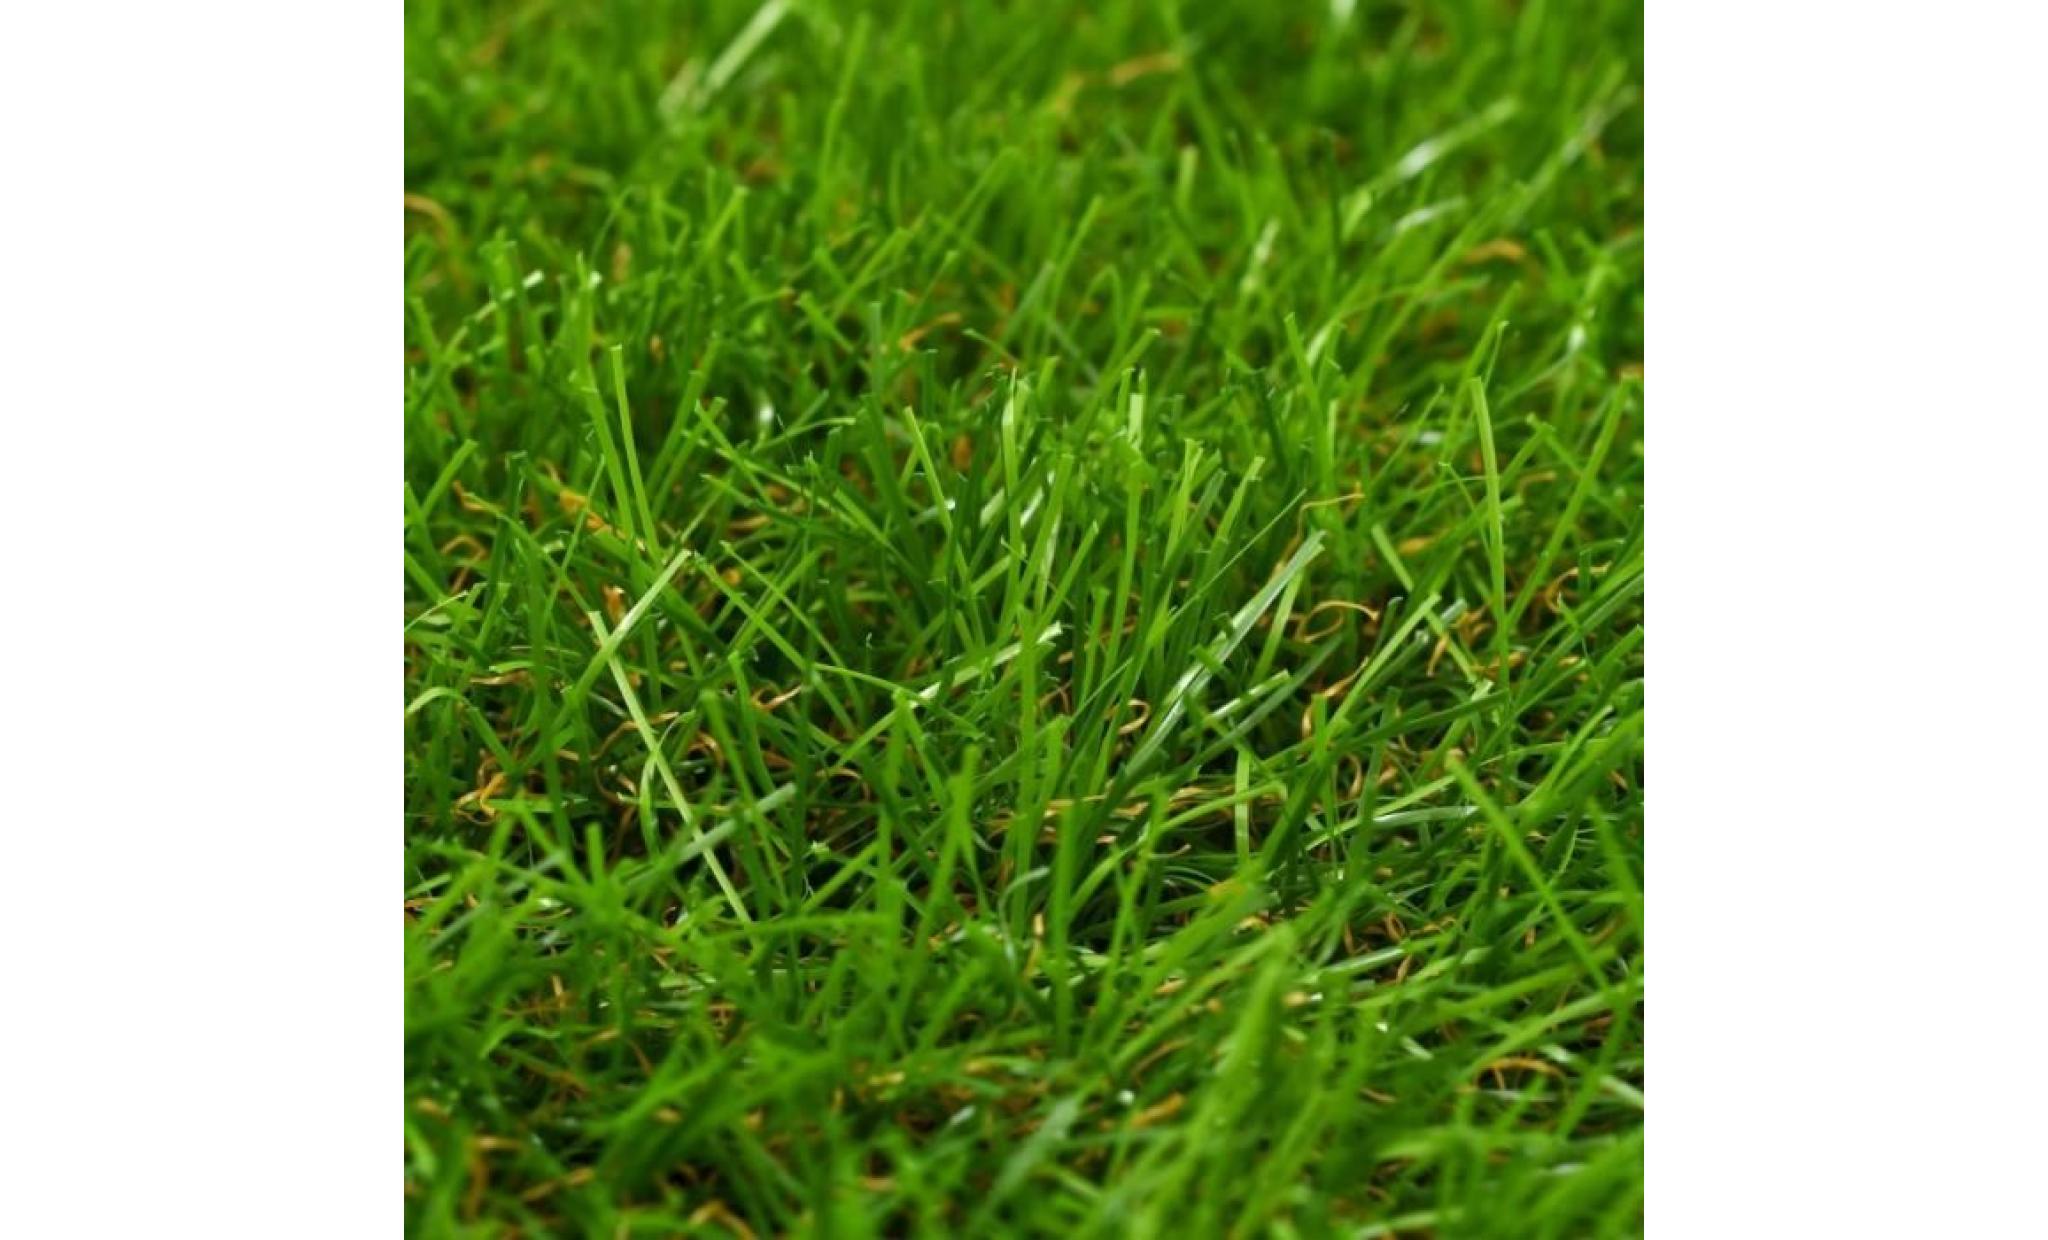 r26 ce gazon artificiel de 40 mm peut vous servir a creer une veritable pelouse, qui necessite un minimum d'entretien, m